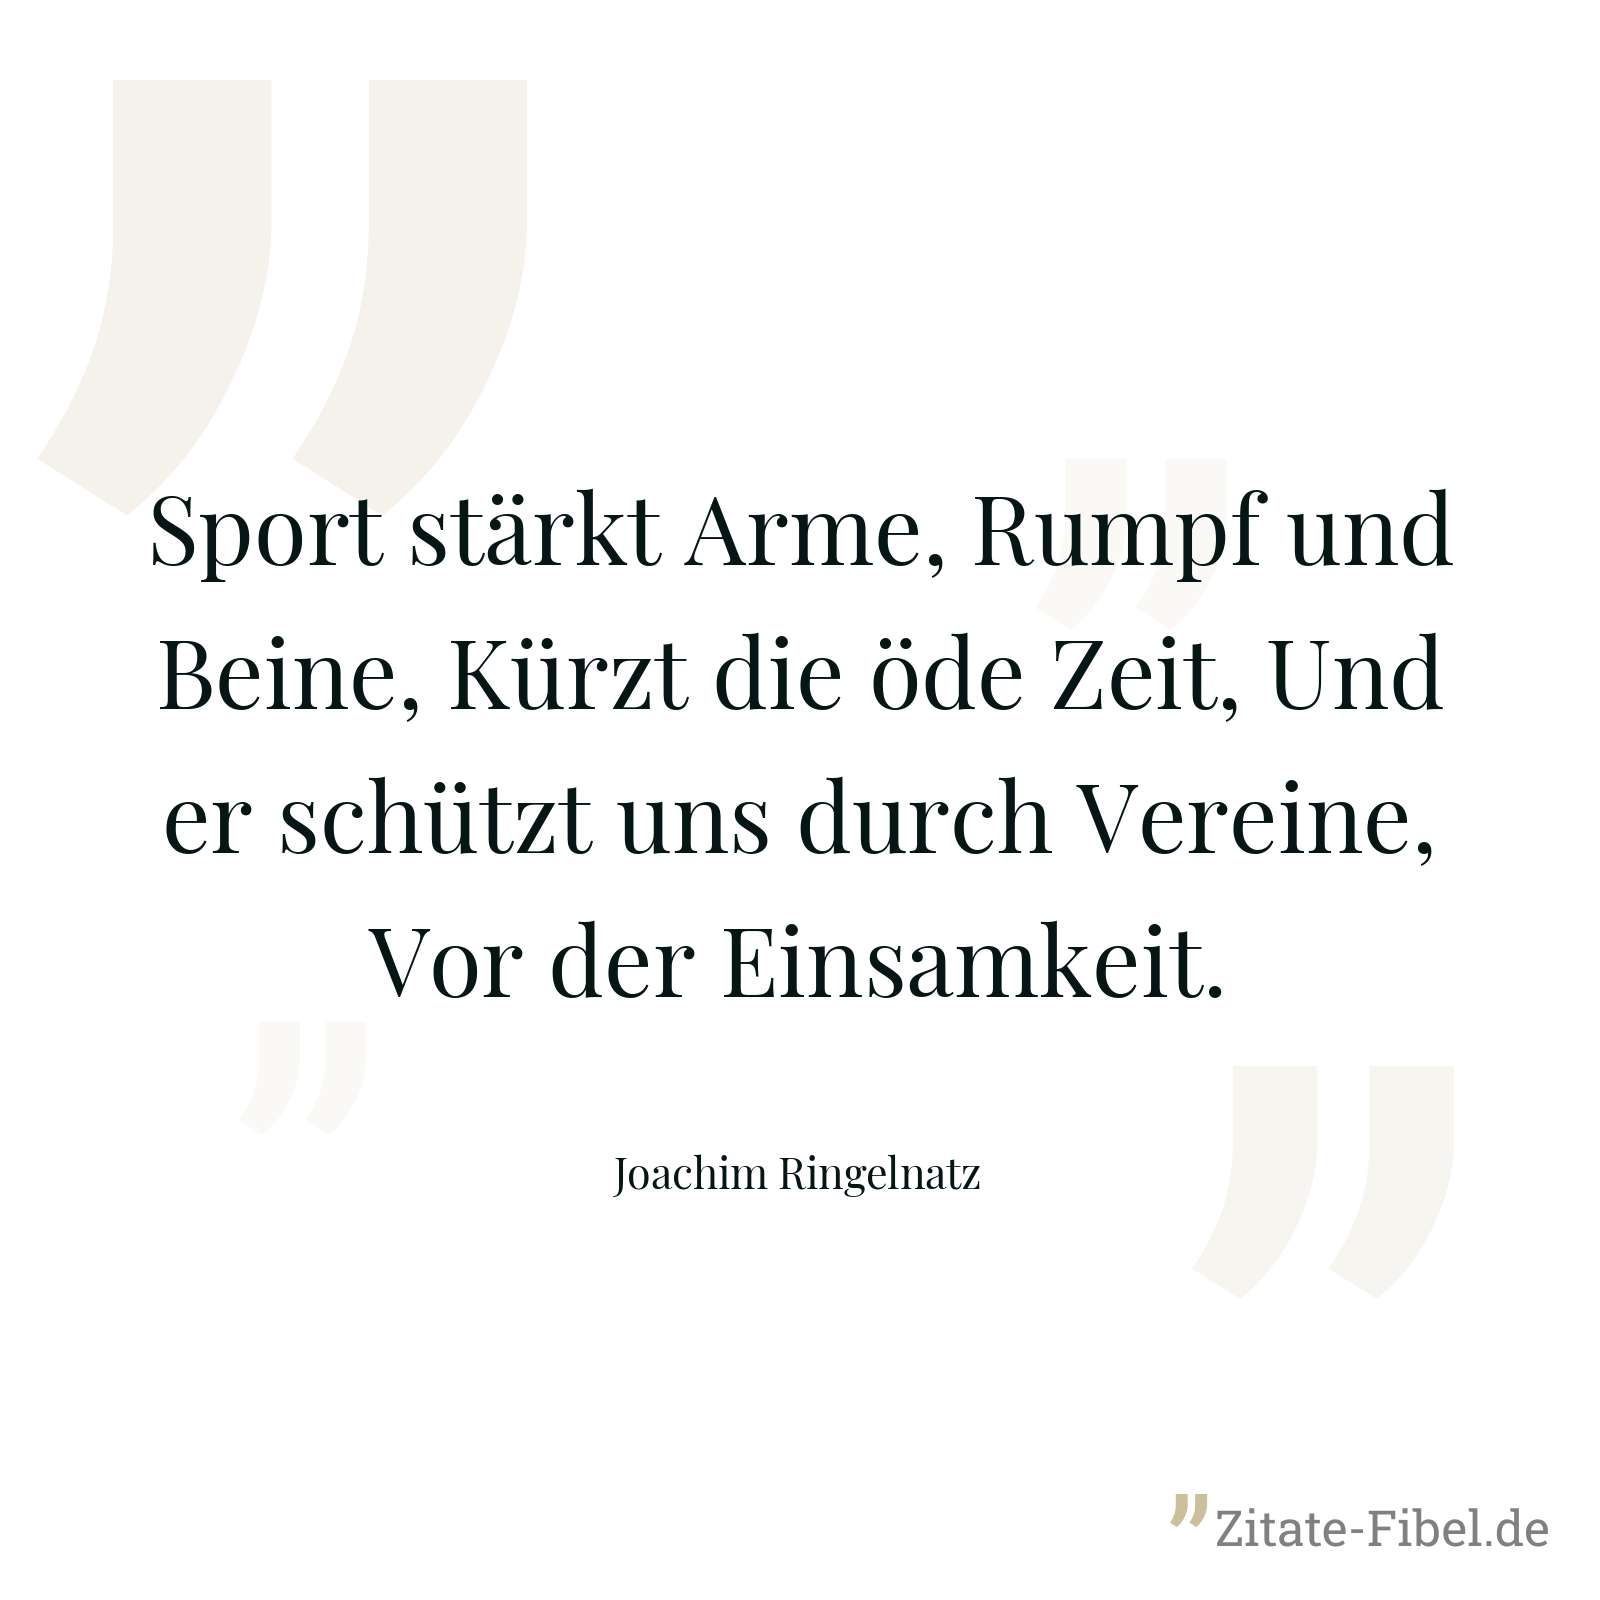 Sport stärkt Arme, Rumpf und Beine, Kürzt die öde Zeit, Und er schützt uns durch Vereine, Vor der Einsamkeit. - Joachim Ringelnatz